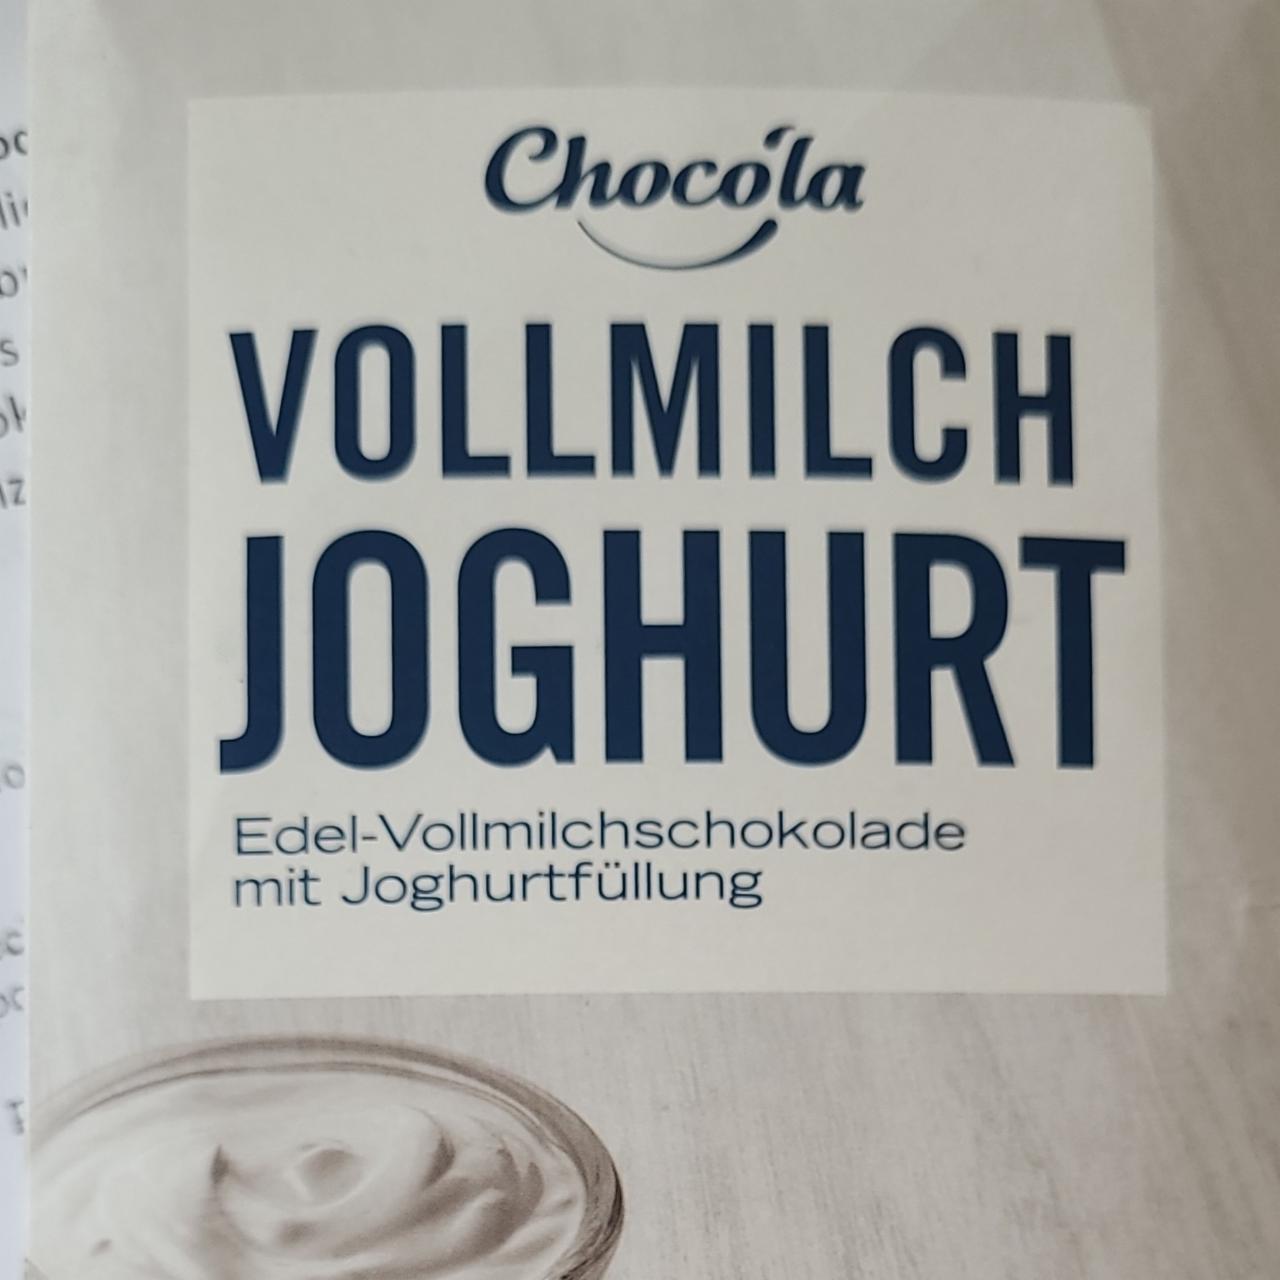 Fotografie - Vollmilch joghurt Chocola